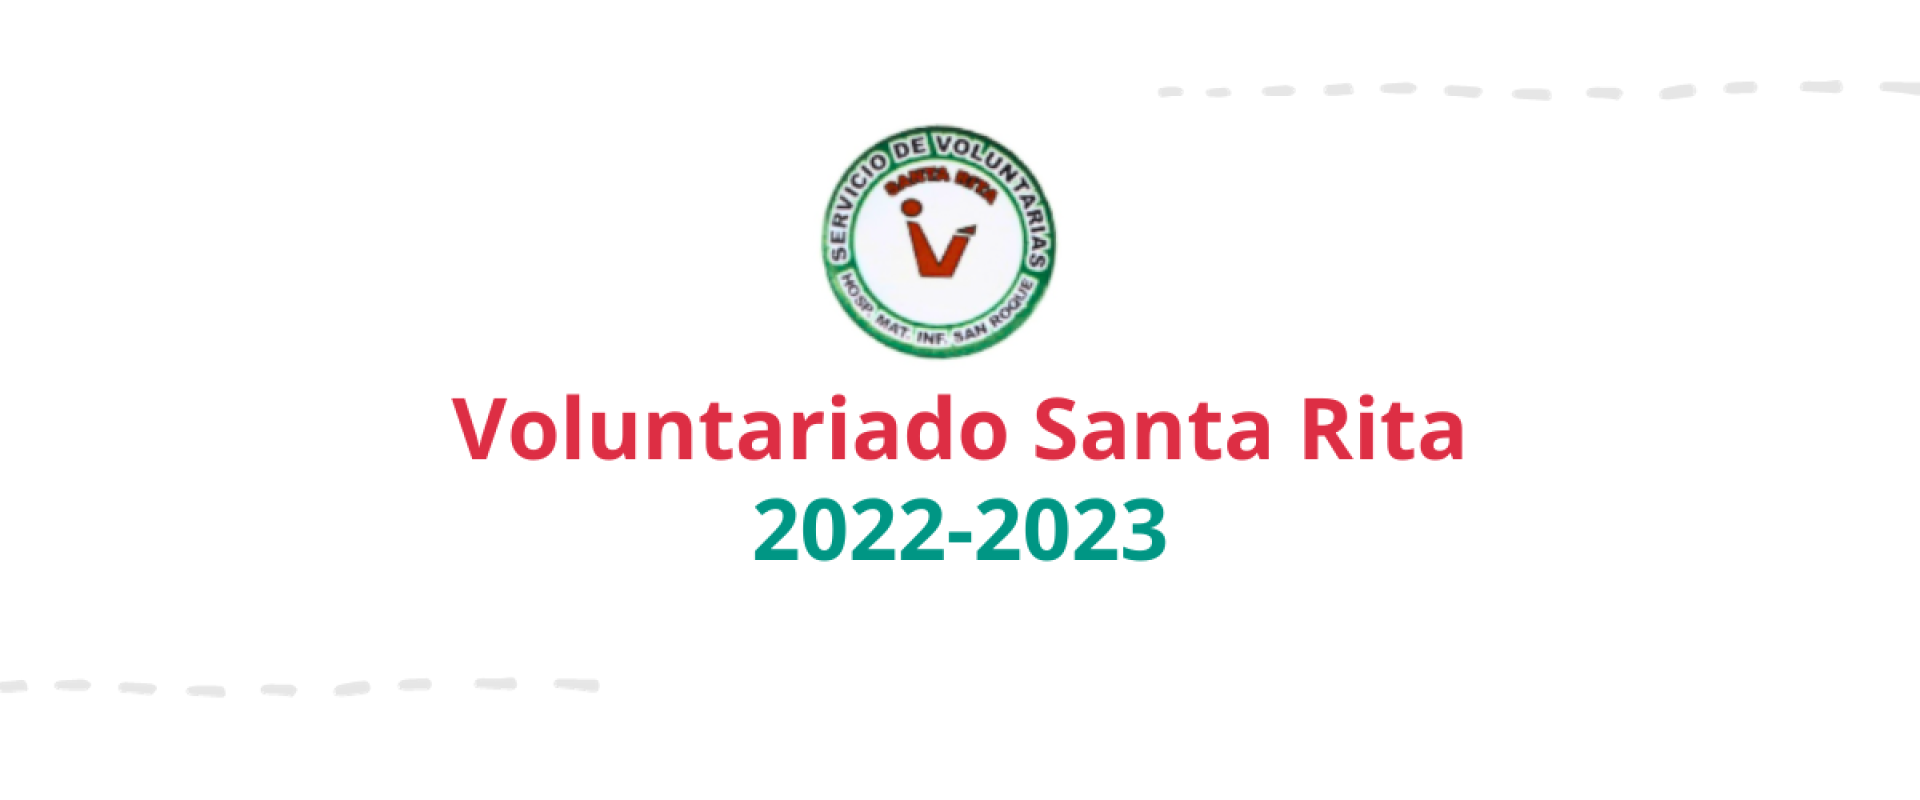 Aportes del Voluntariado Santa Rita 2022-2023